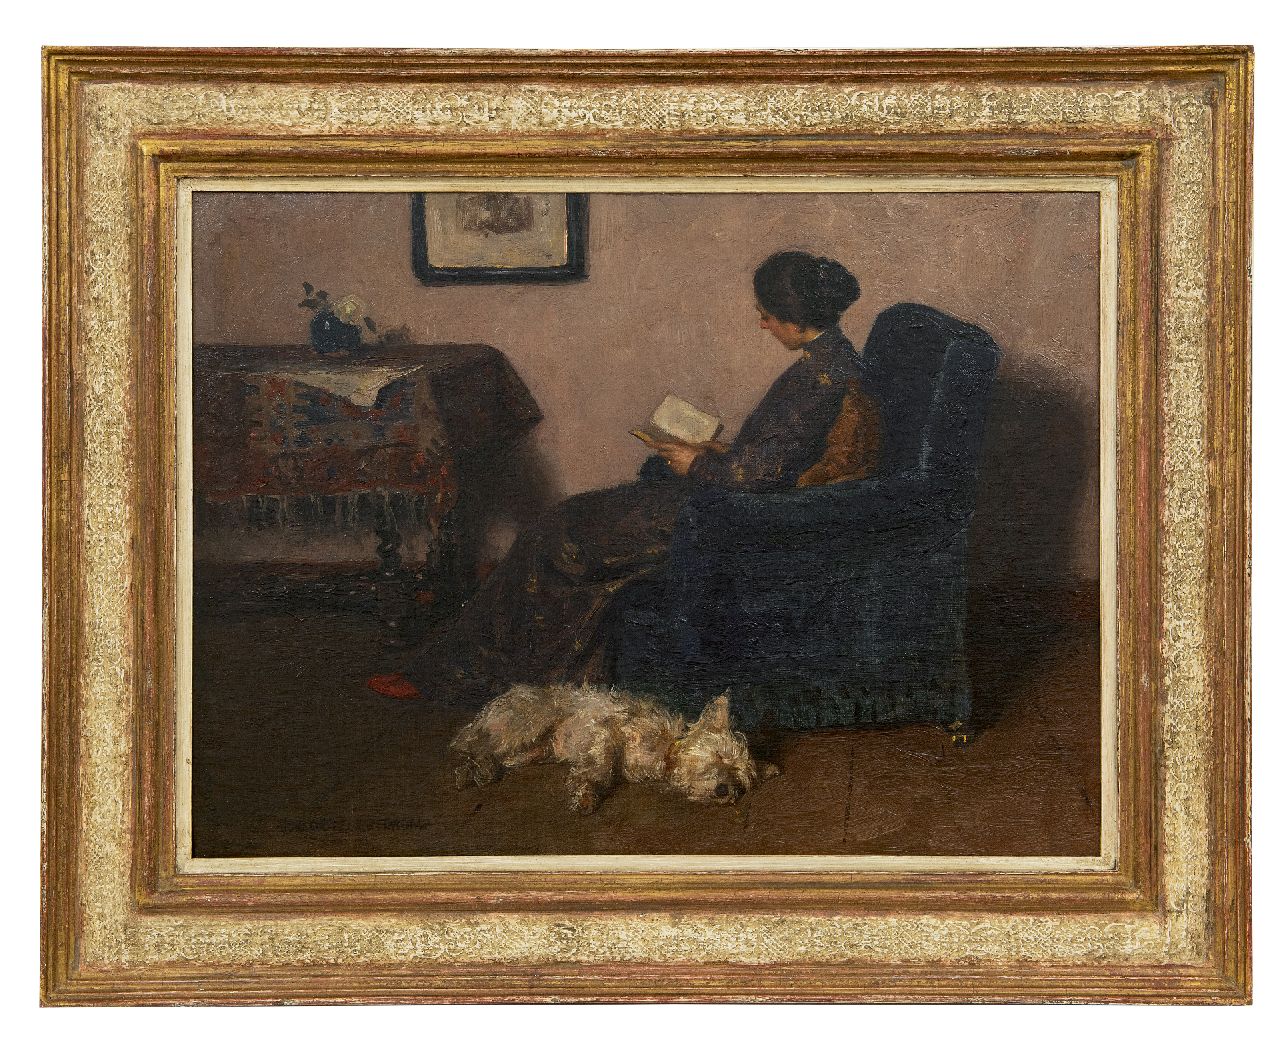 Zoetelief Tromp J.  | Johannes 'Jan' Zoetelief Tromp | Schilderijen te koop aangeboden | De vrouw van de schilder, lezend, met hun hond Billie, olieverf op doek 41,5 x 55,5 cm, gesigneerd linksonder